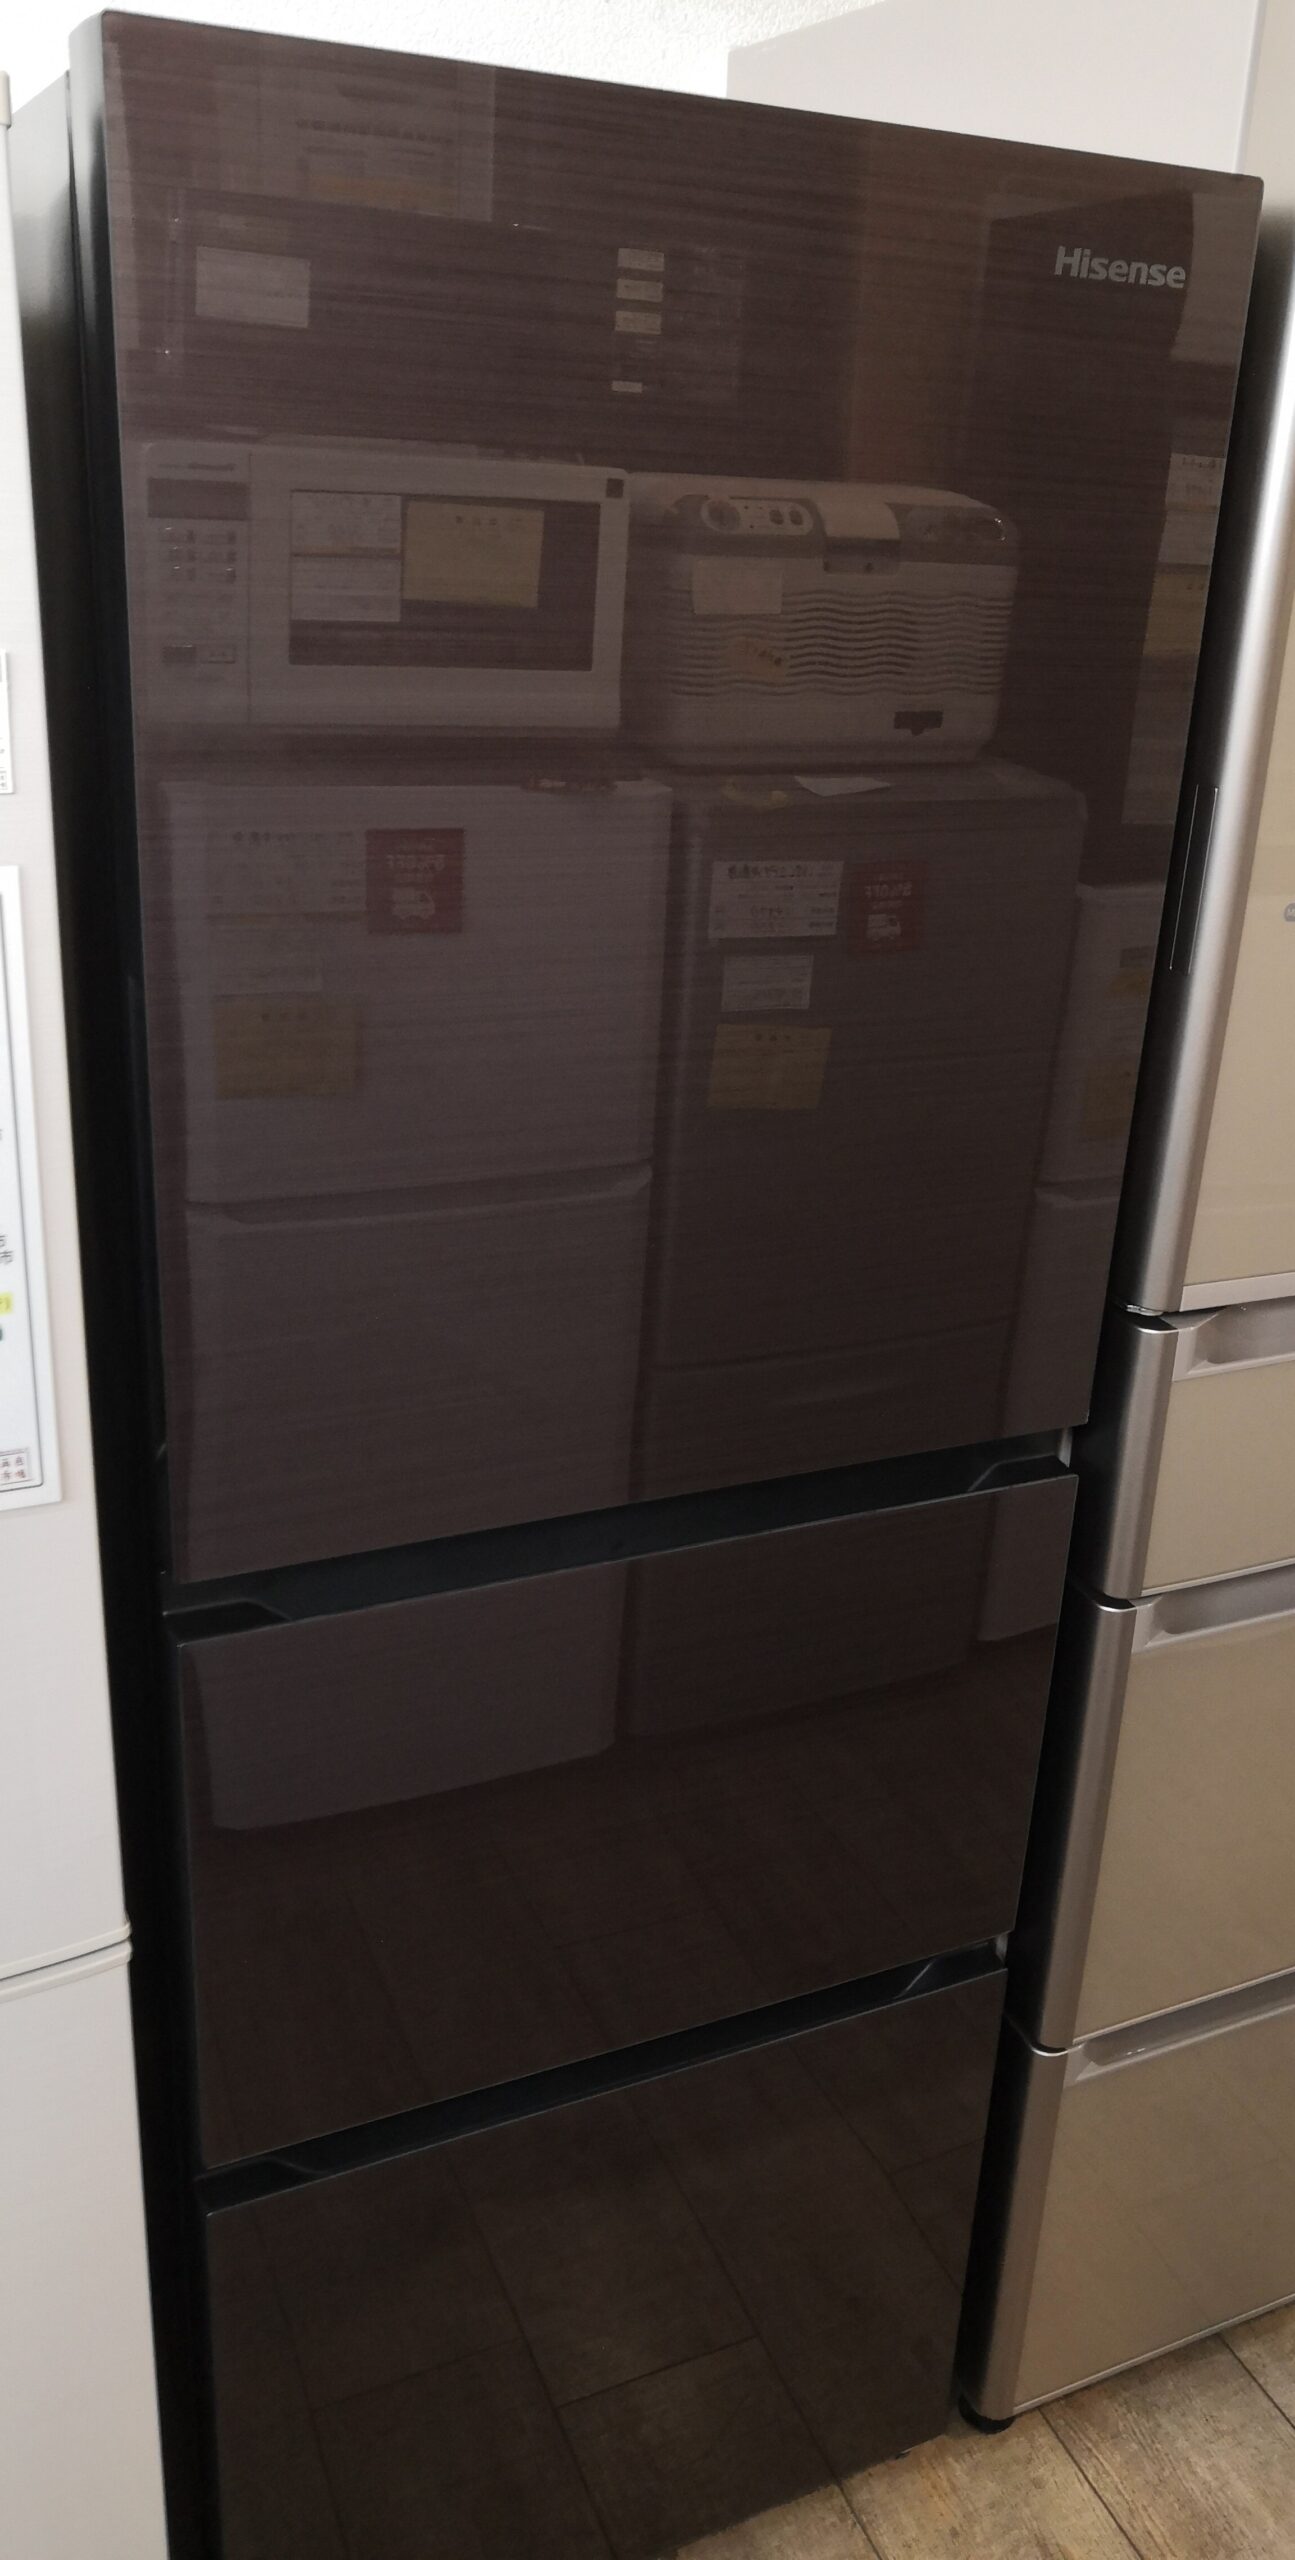 Hisense ハイセンス 282L 2020年製 2ドア 冷凍冷蔵庫 冷蔵庫買取しました。 | 愛知と岐阜のリサイクルショップ 再良市場